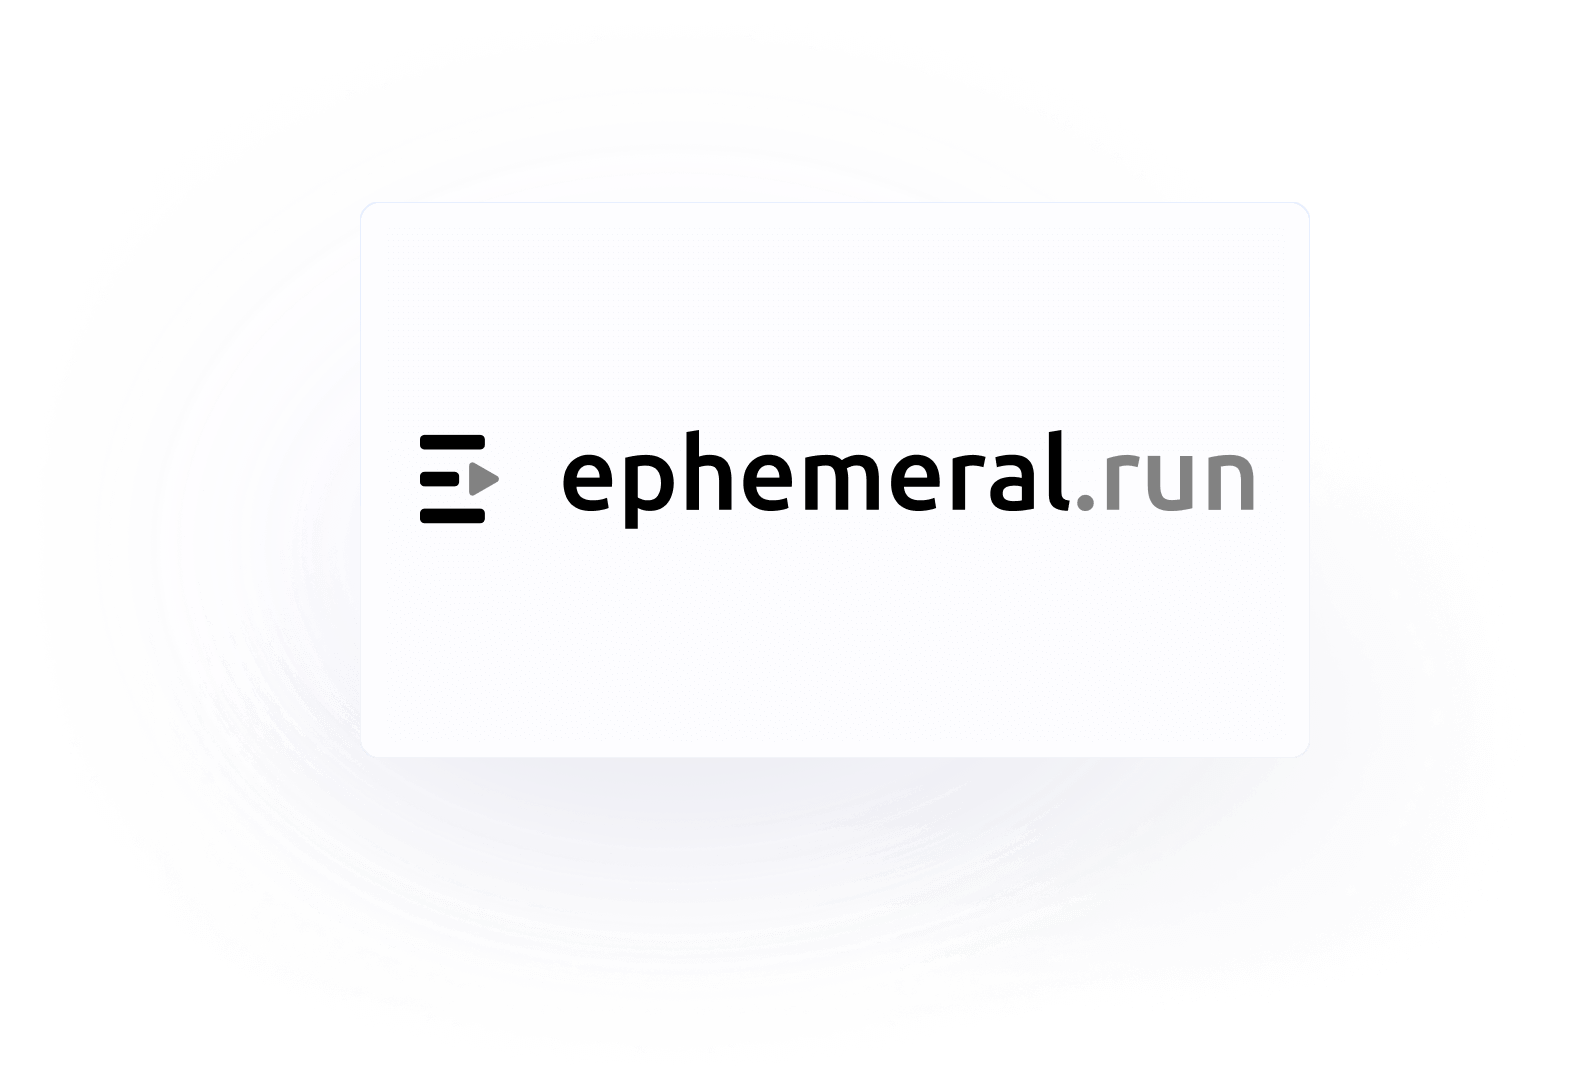 Ephemeral.run